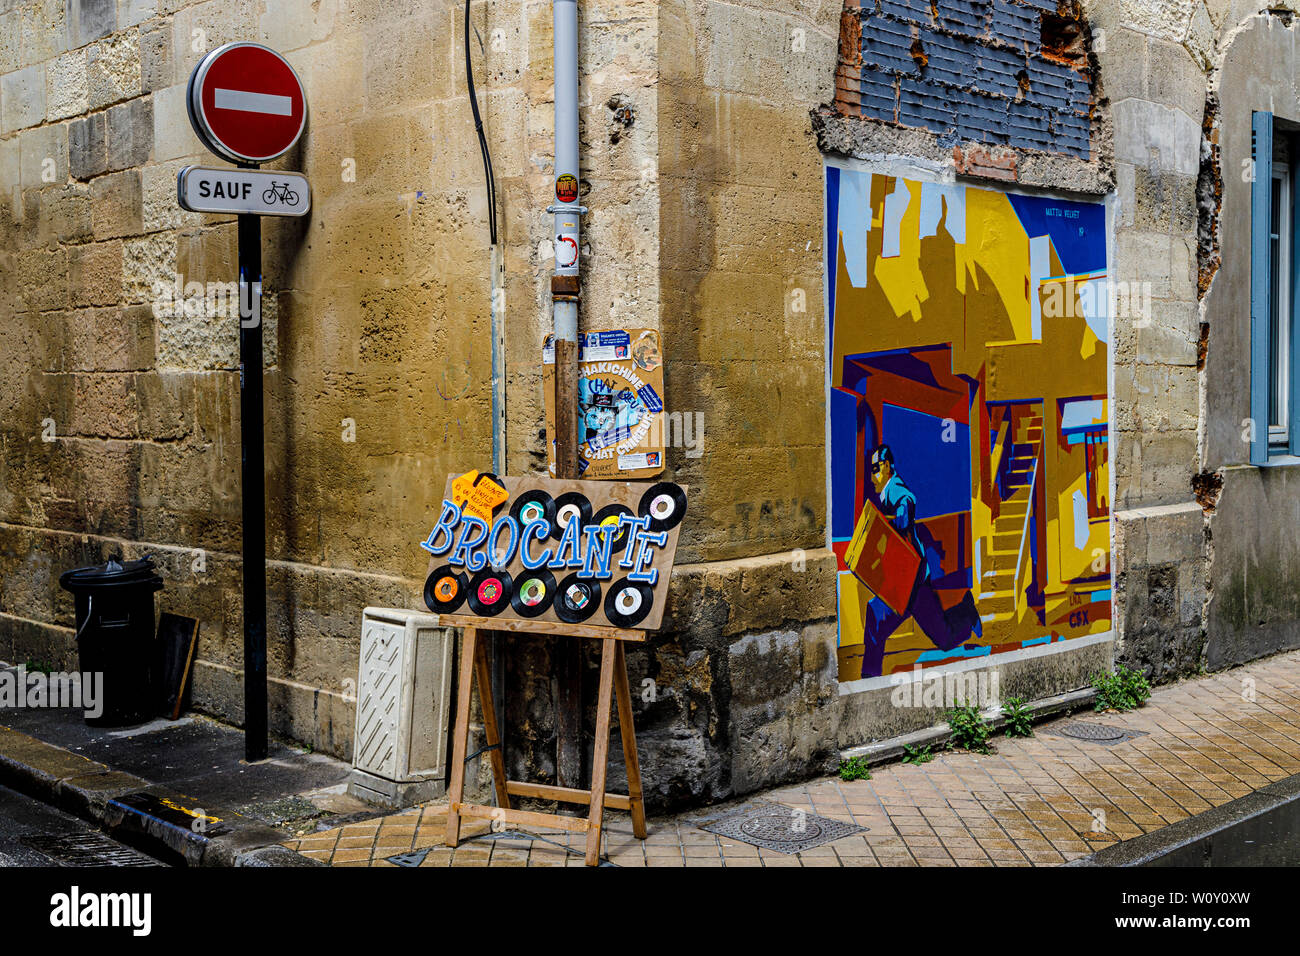 Straßenecke in Bordeaux, Frankreich. Zeichen, die keine Zufahrt nur für Fahrräder, Werbung für Shop Verkauf von Vinyl und einer Matth samt Wand Art. Stockfoto